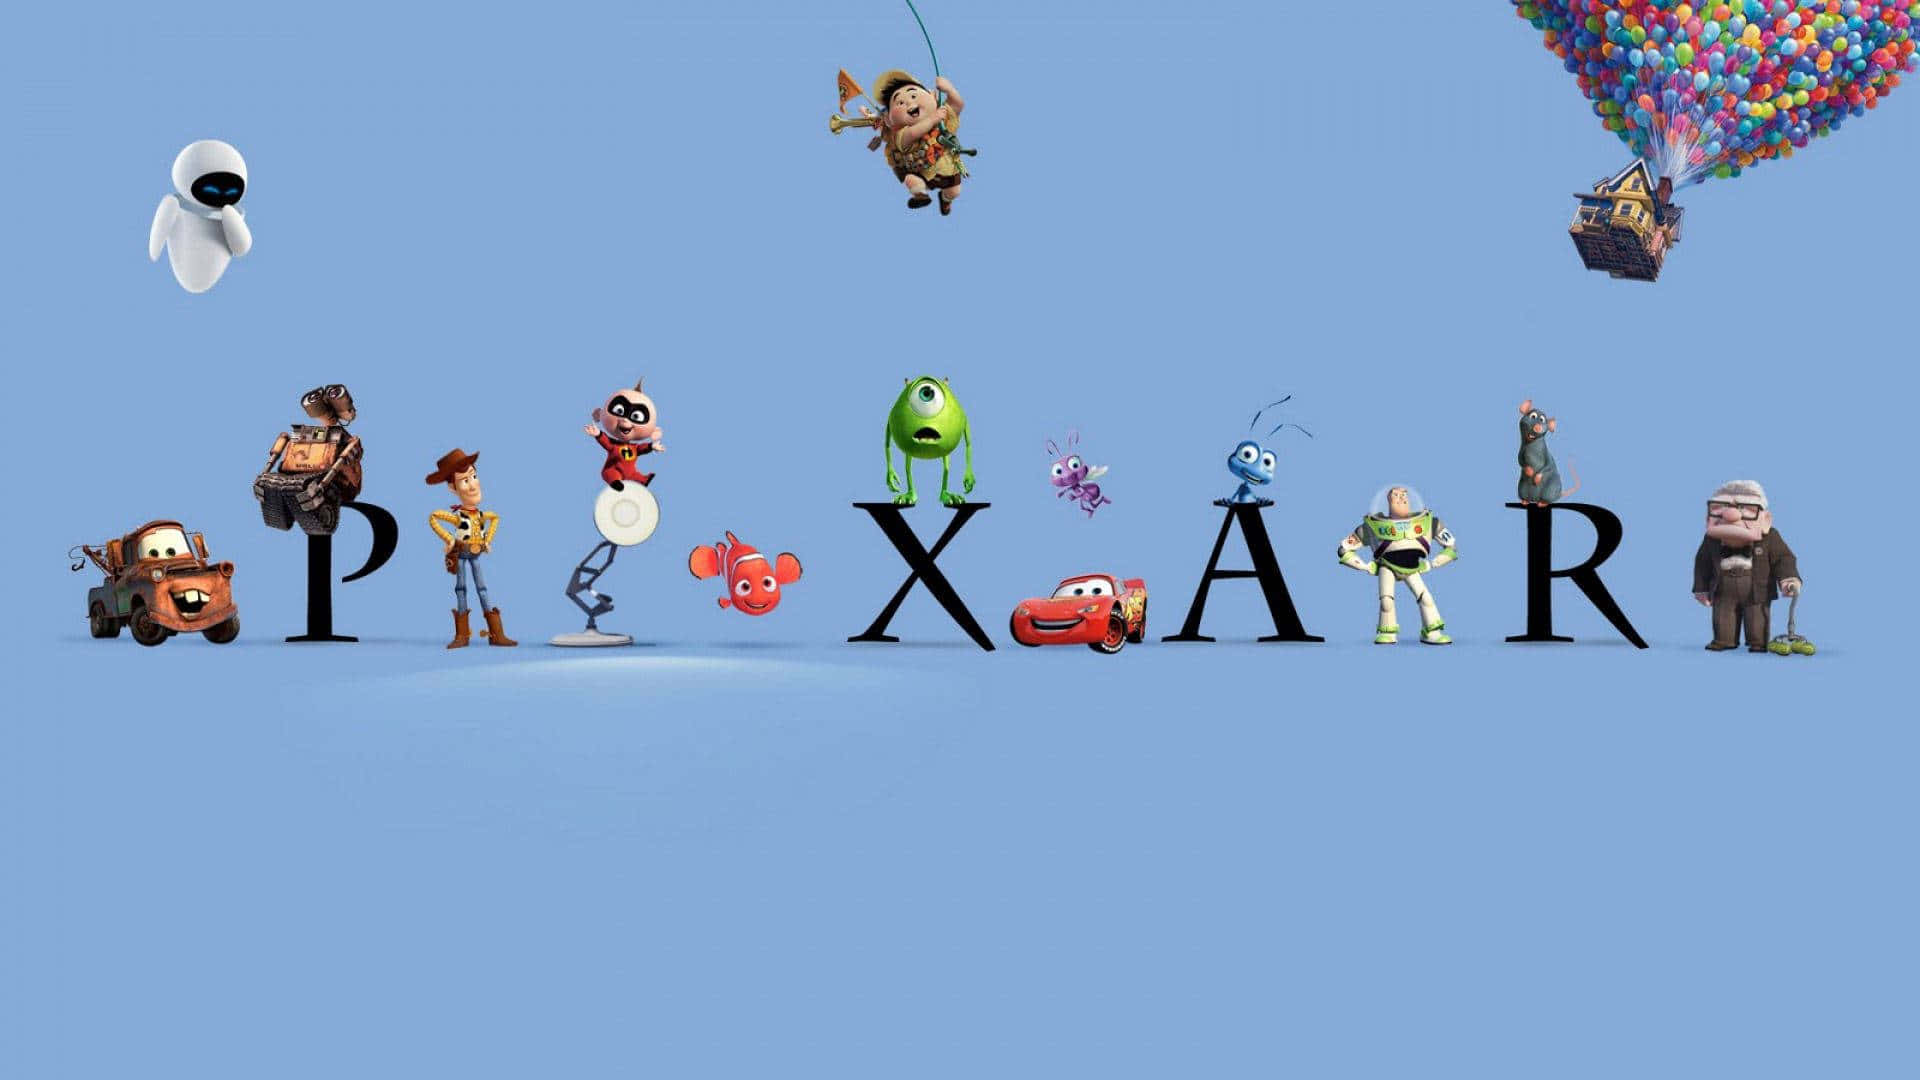 Pixarbakgrundsbilder Hd